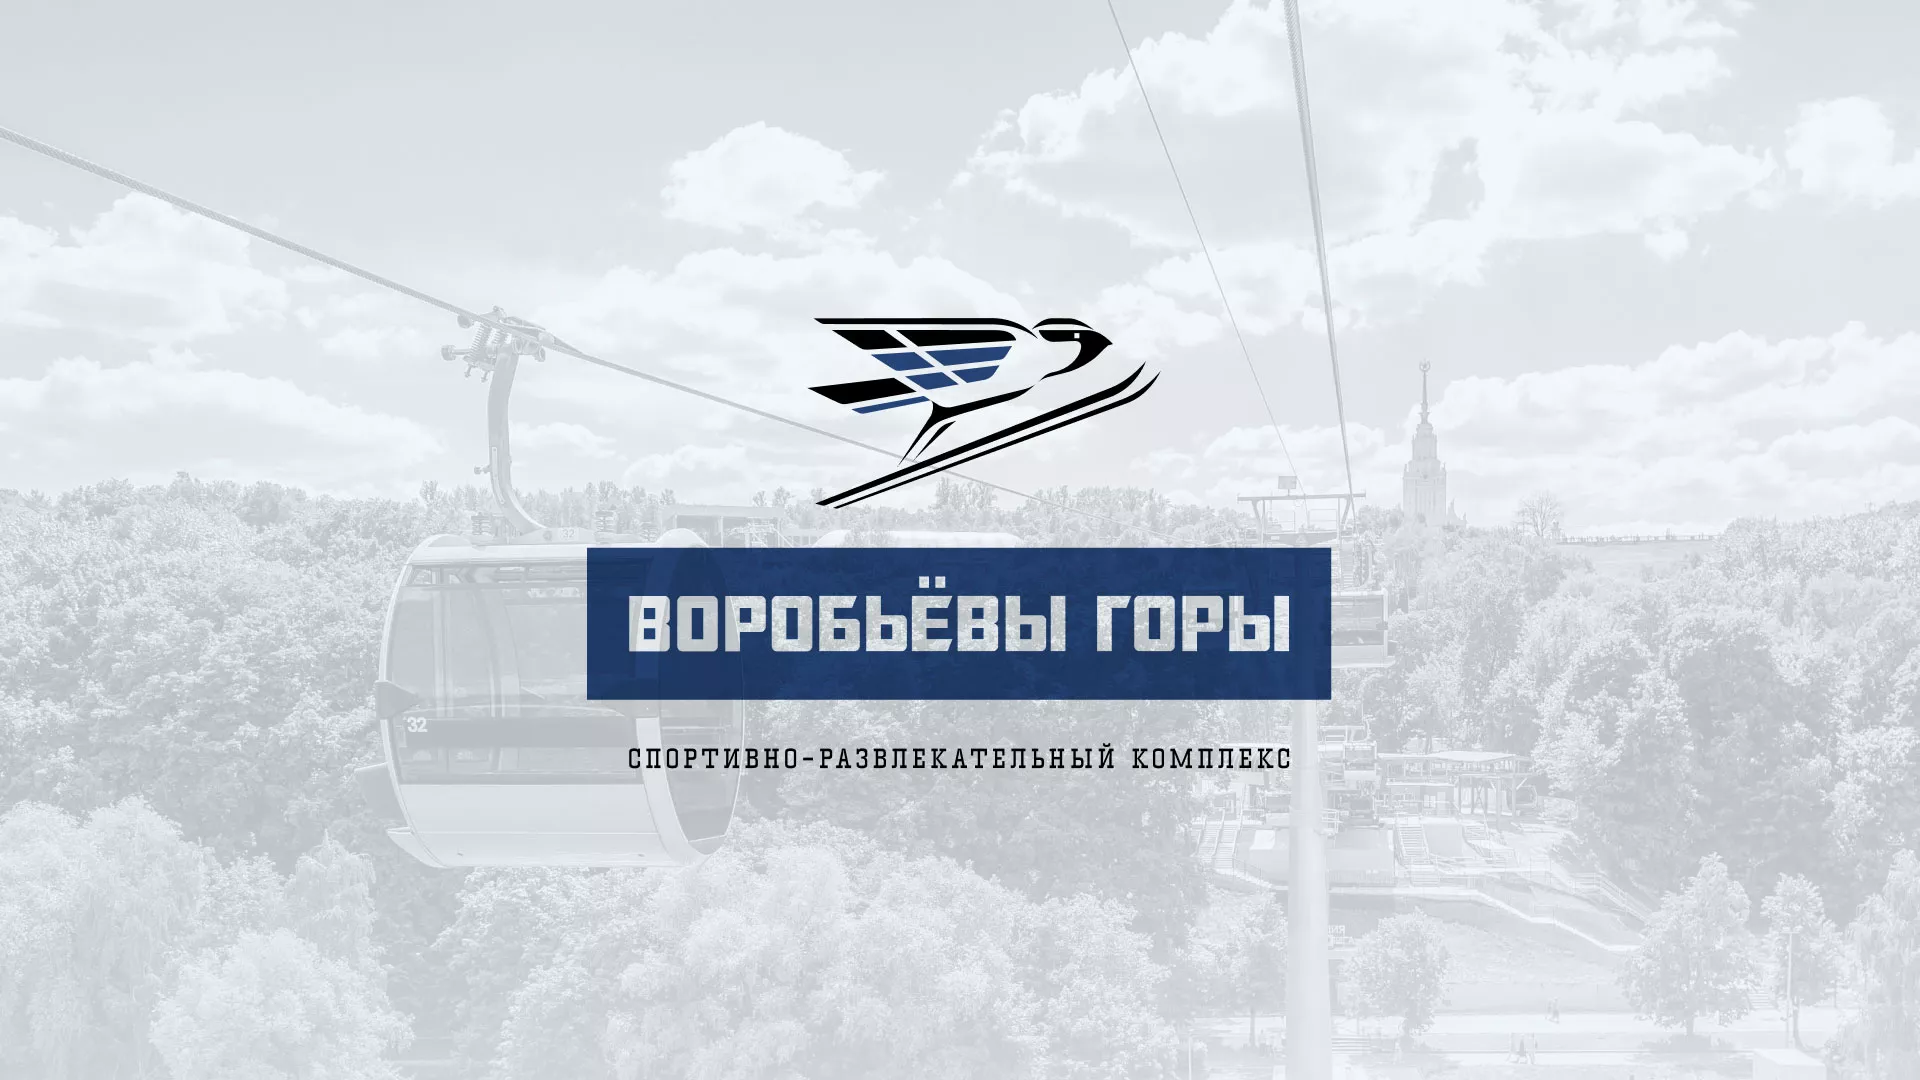 Разработка сайта в Карпинске для спортивно-развлекательного комплекса «Воробьёвы горы»